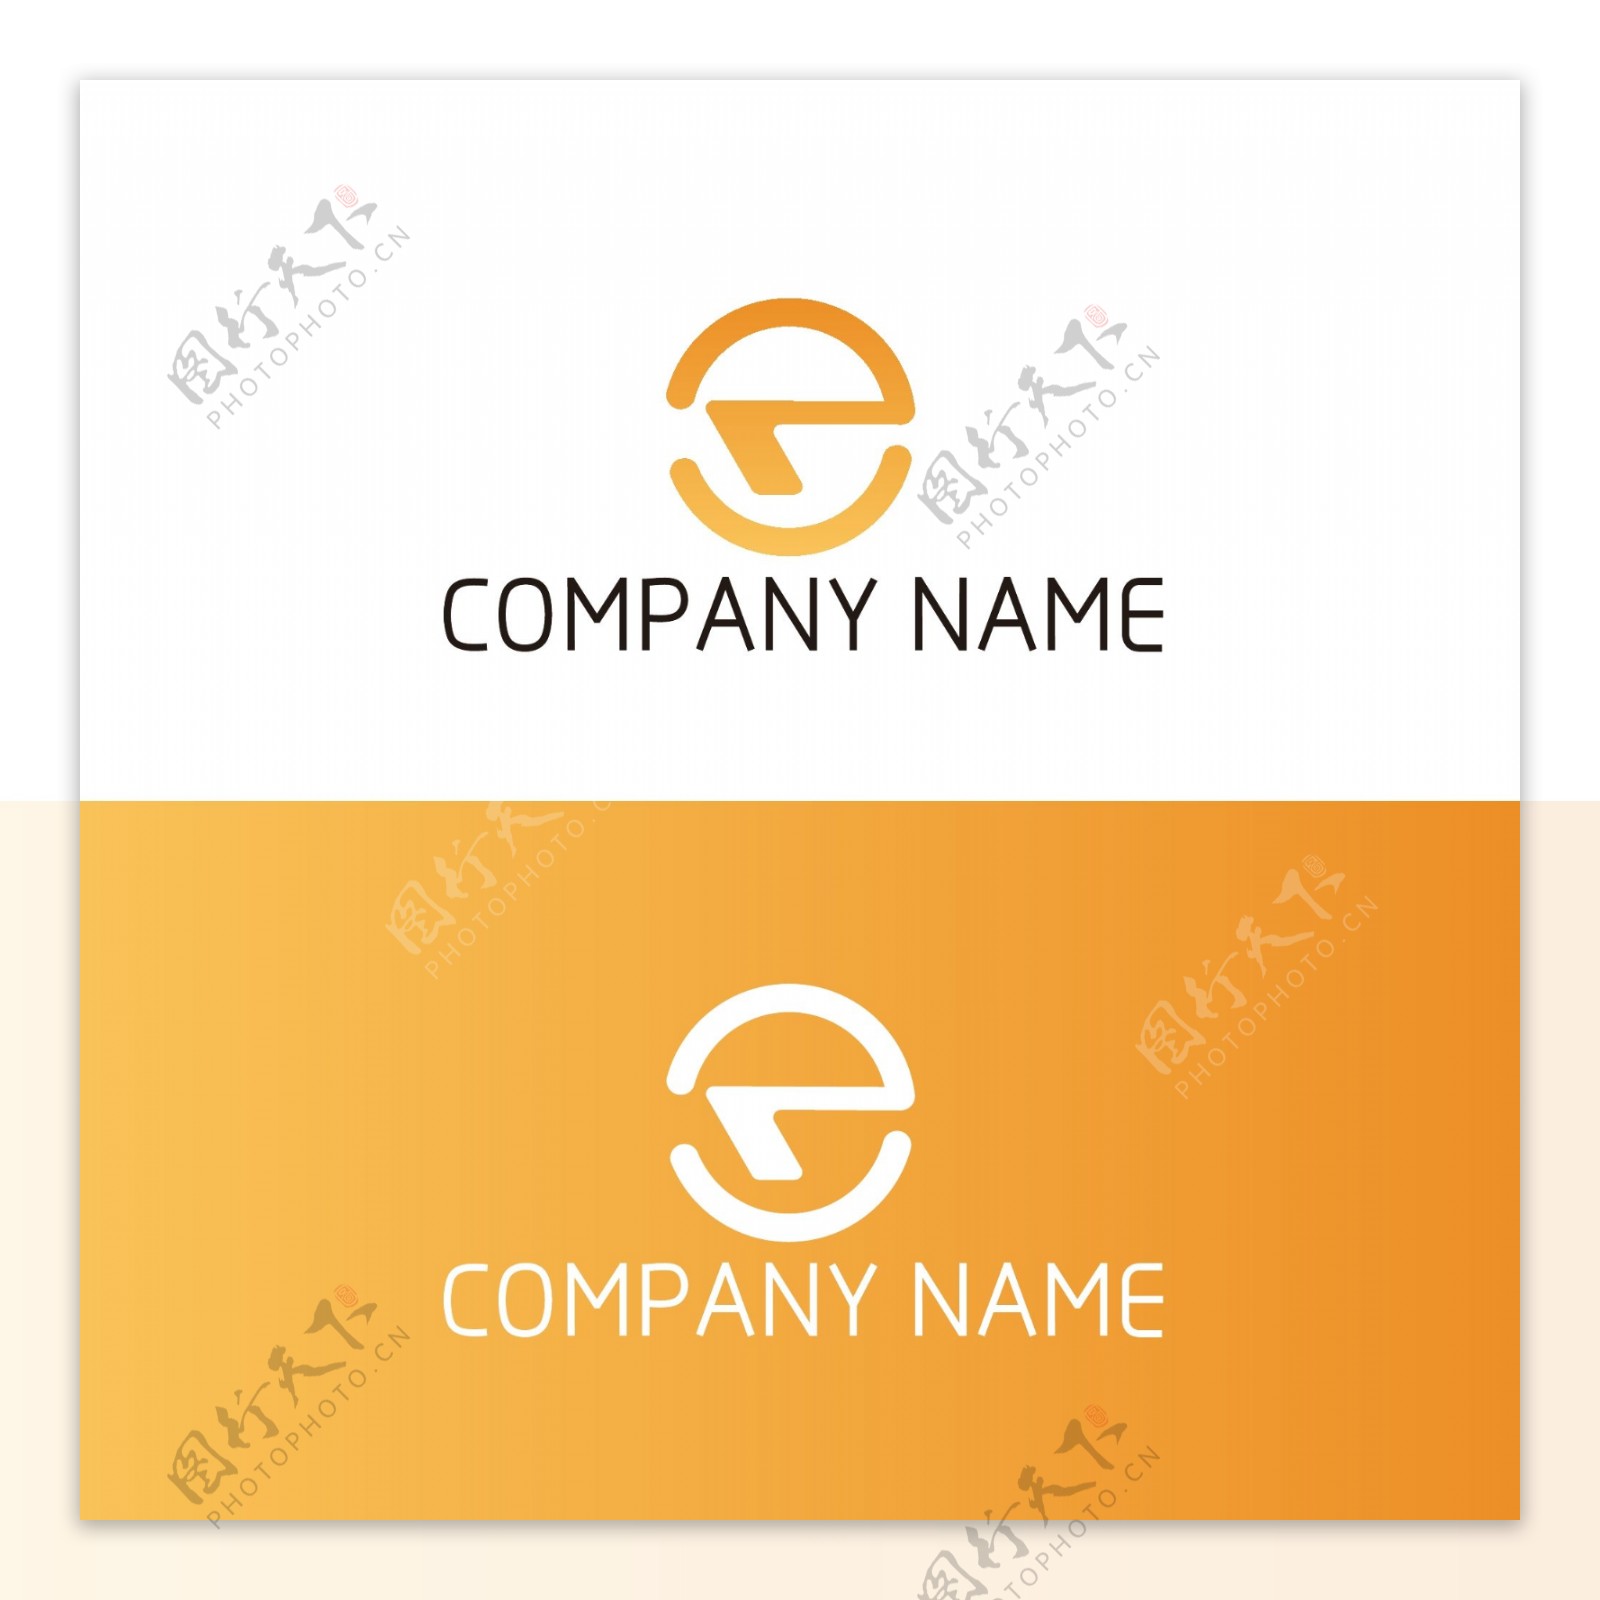 企业标志平面logo设计